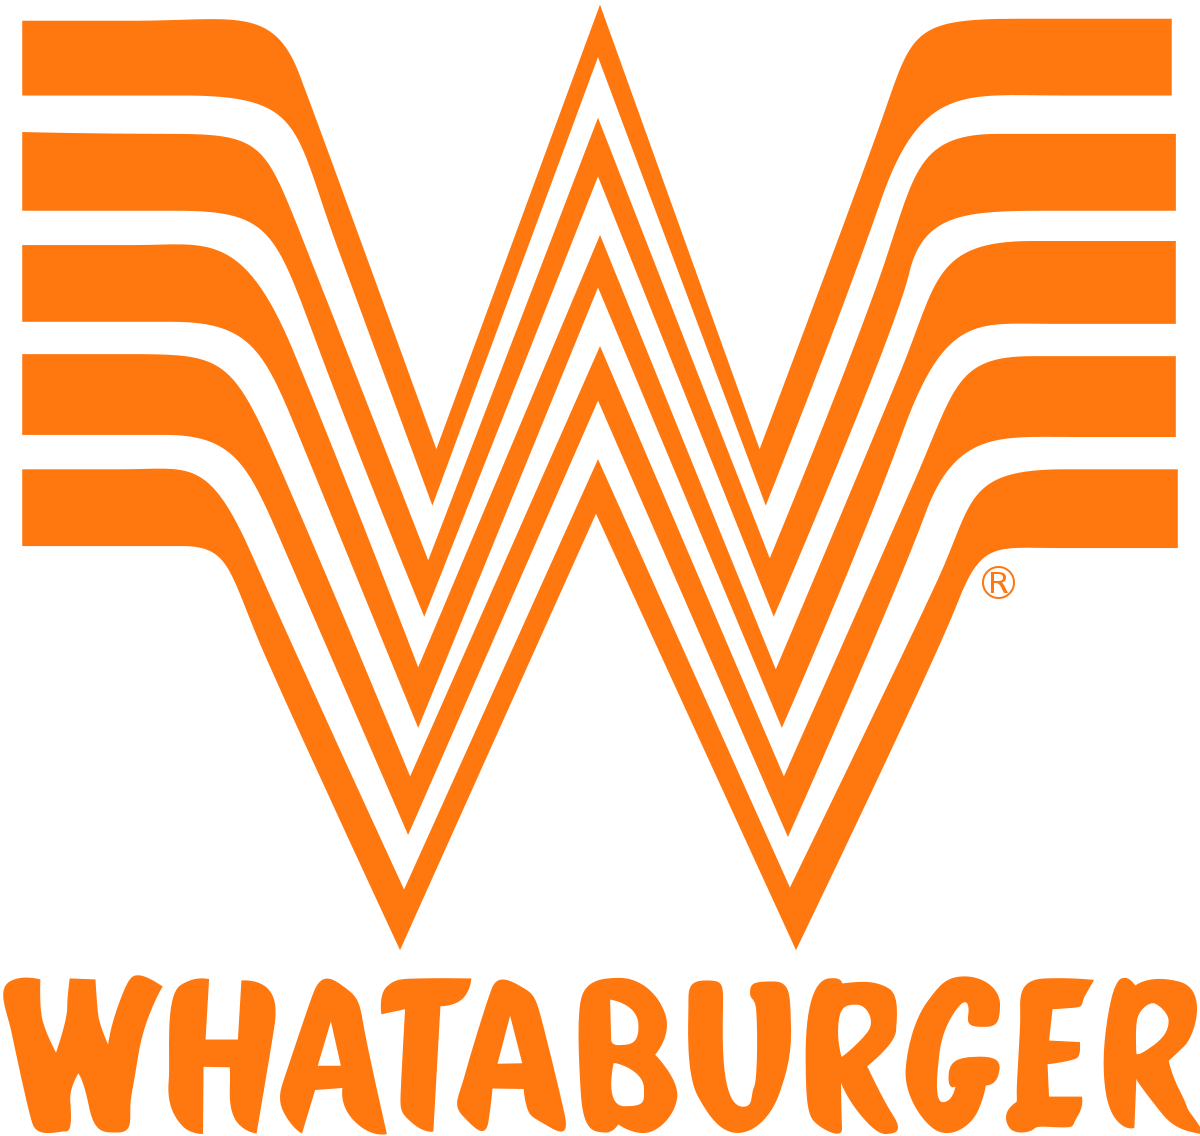 Black and White Chain Restaurant Logo - Whataburger